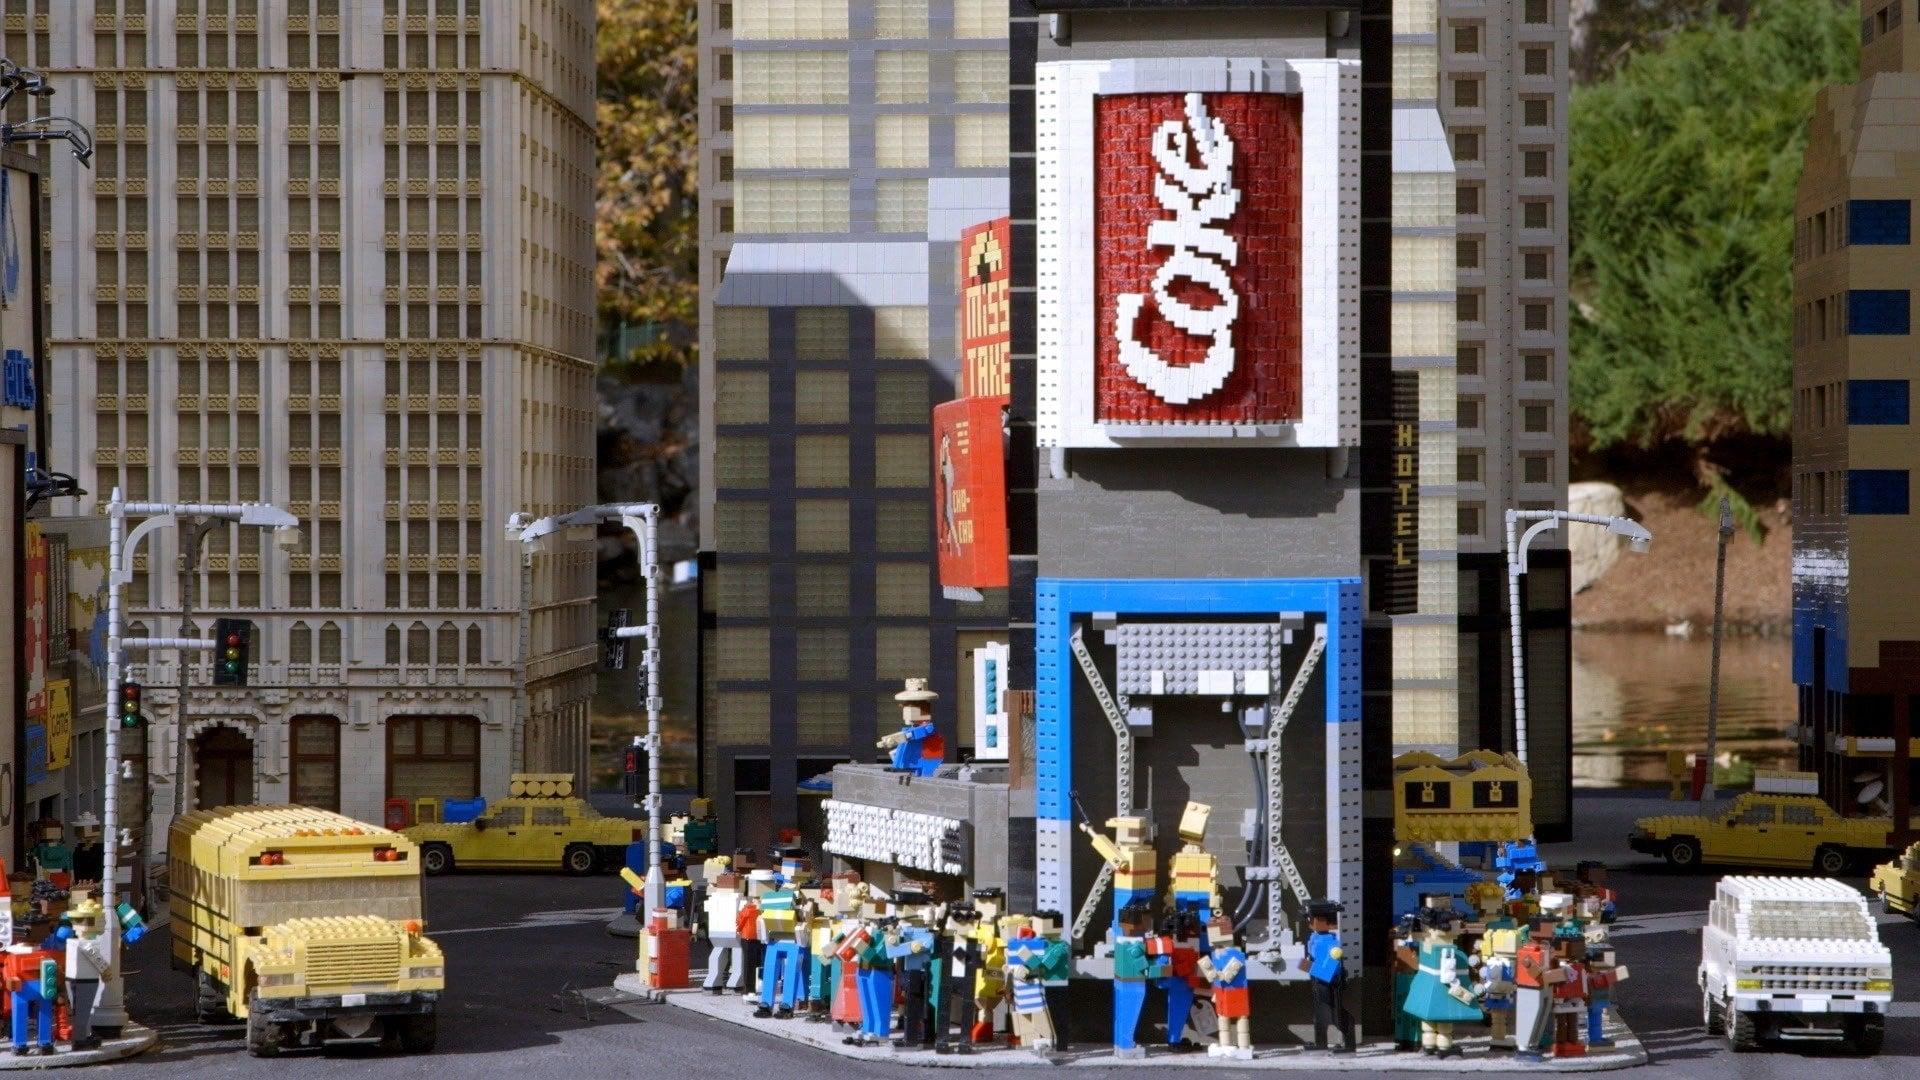 A LEGO Brickumentary backdrop